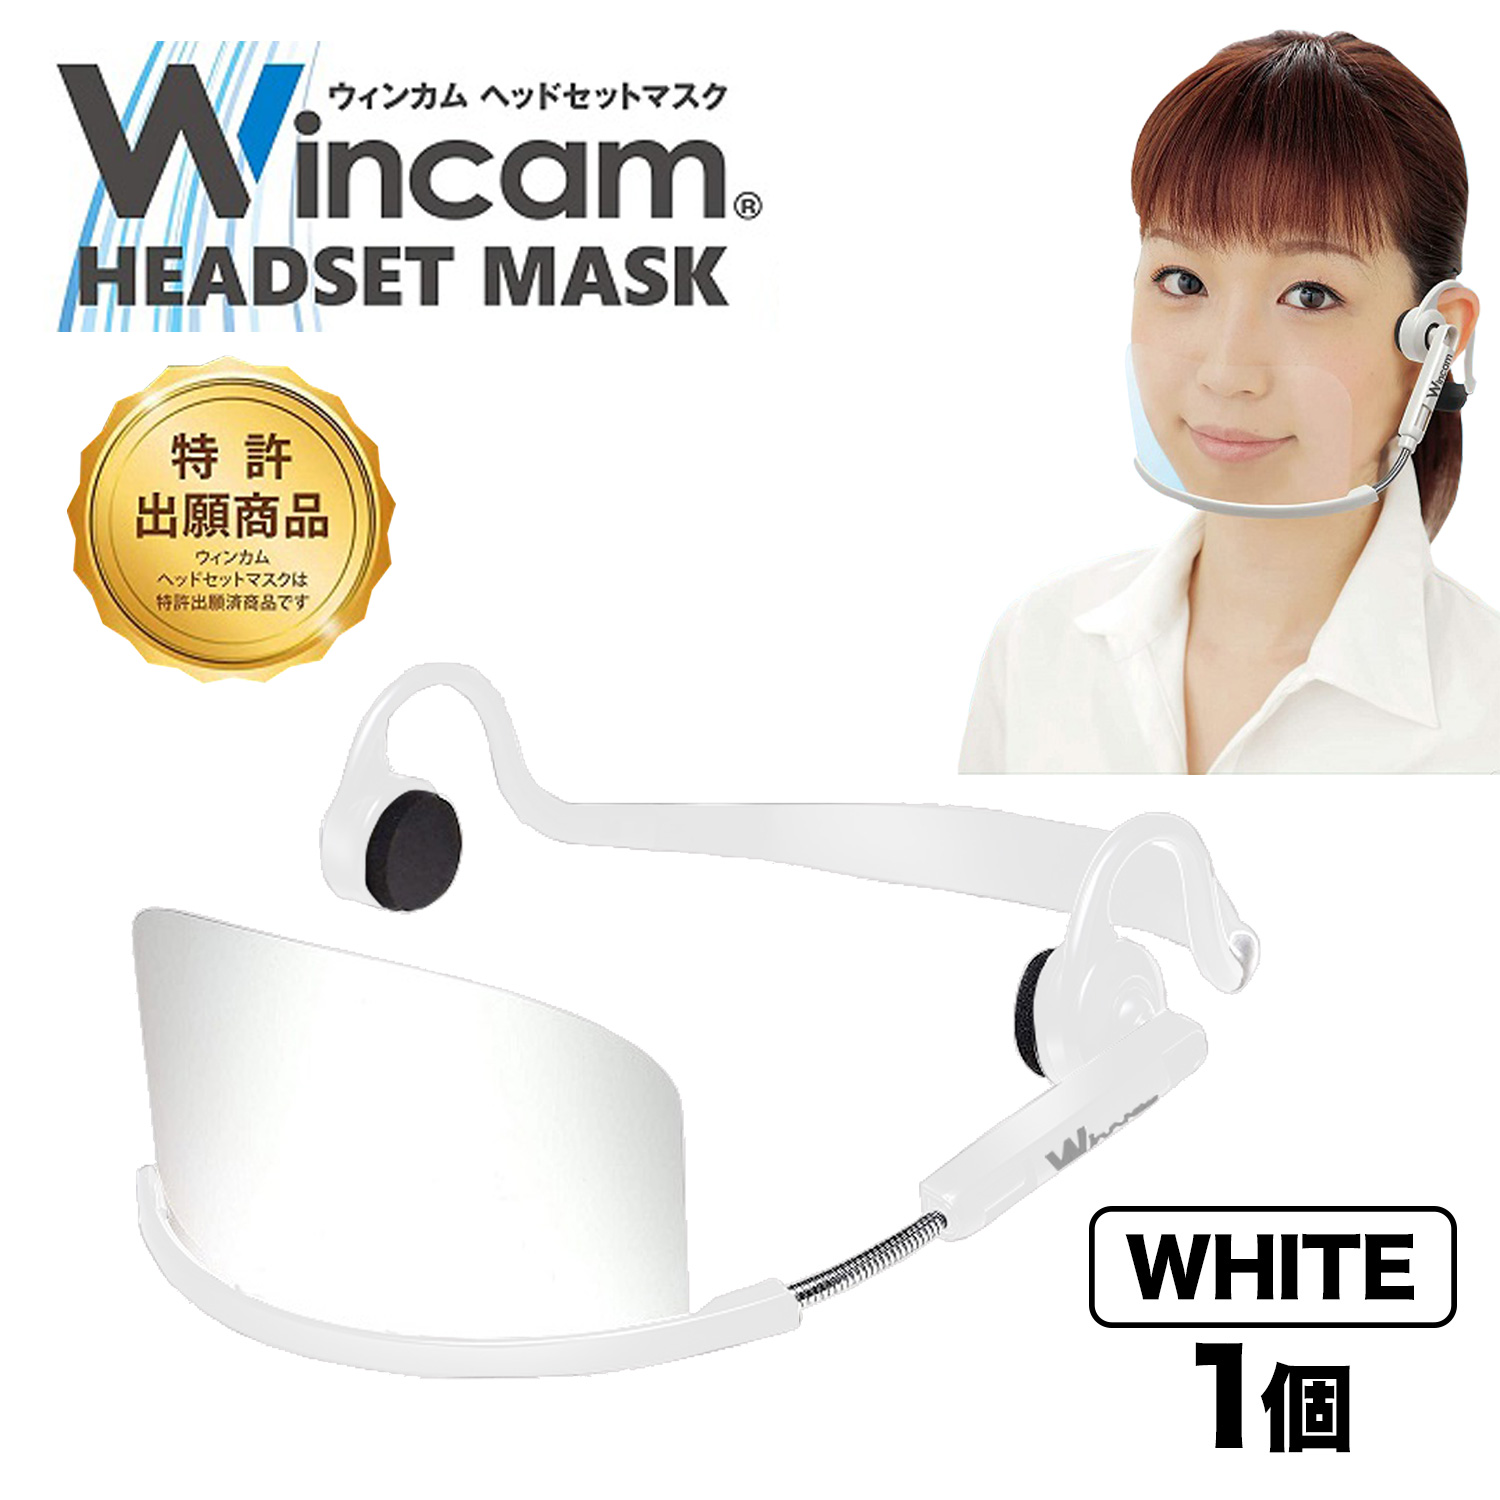 ウィンカム 透明衛生マスク/ヘッドセットマスク 1個 W-HSM-1W2 (sb)【メール便不可】　ホワイト ホワイト